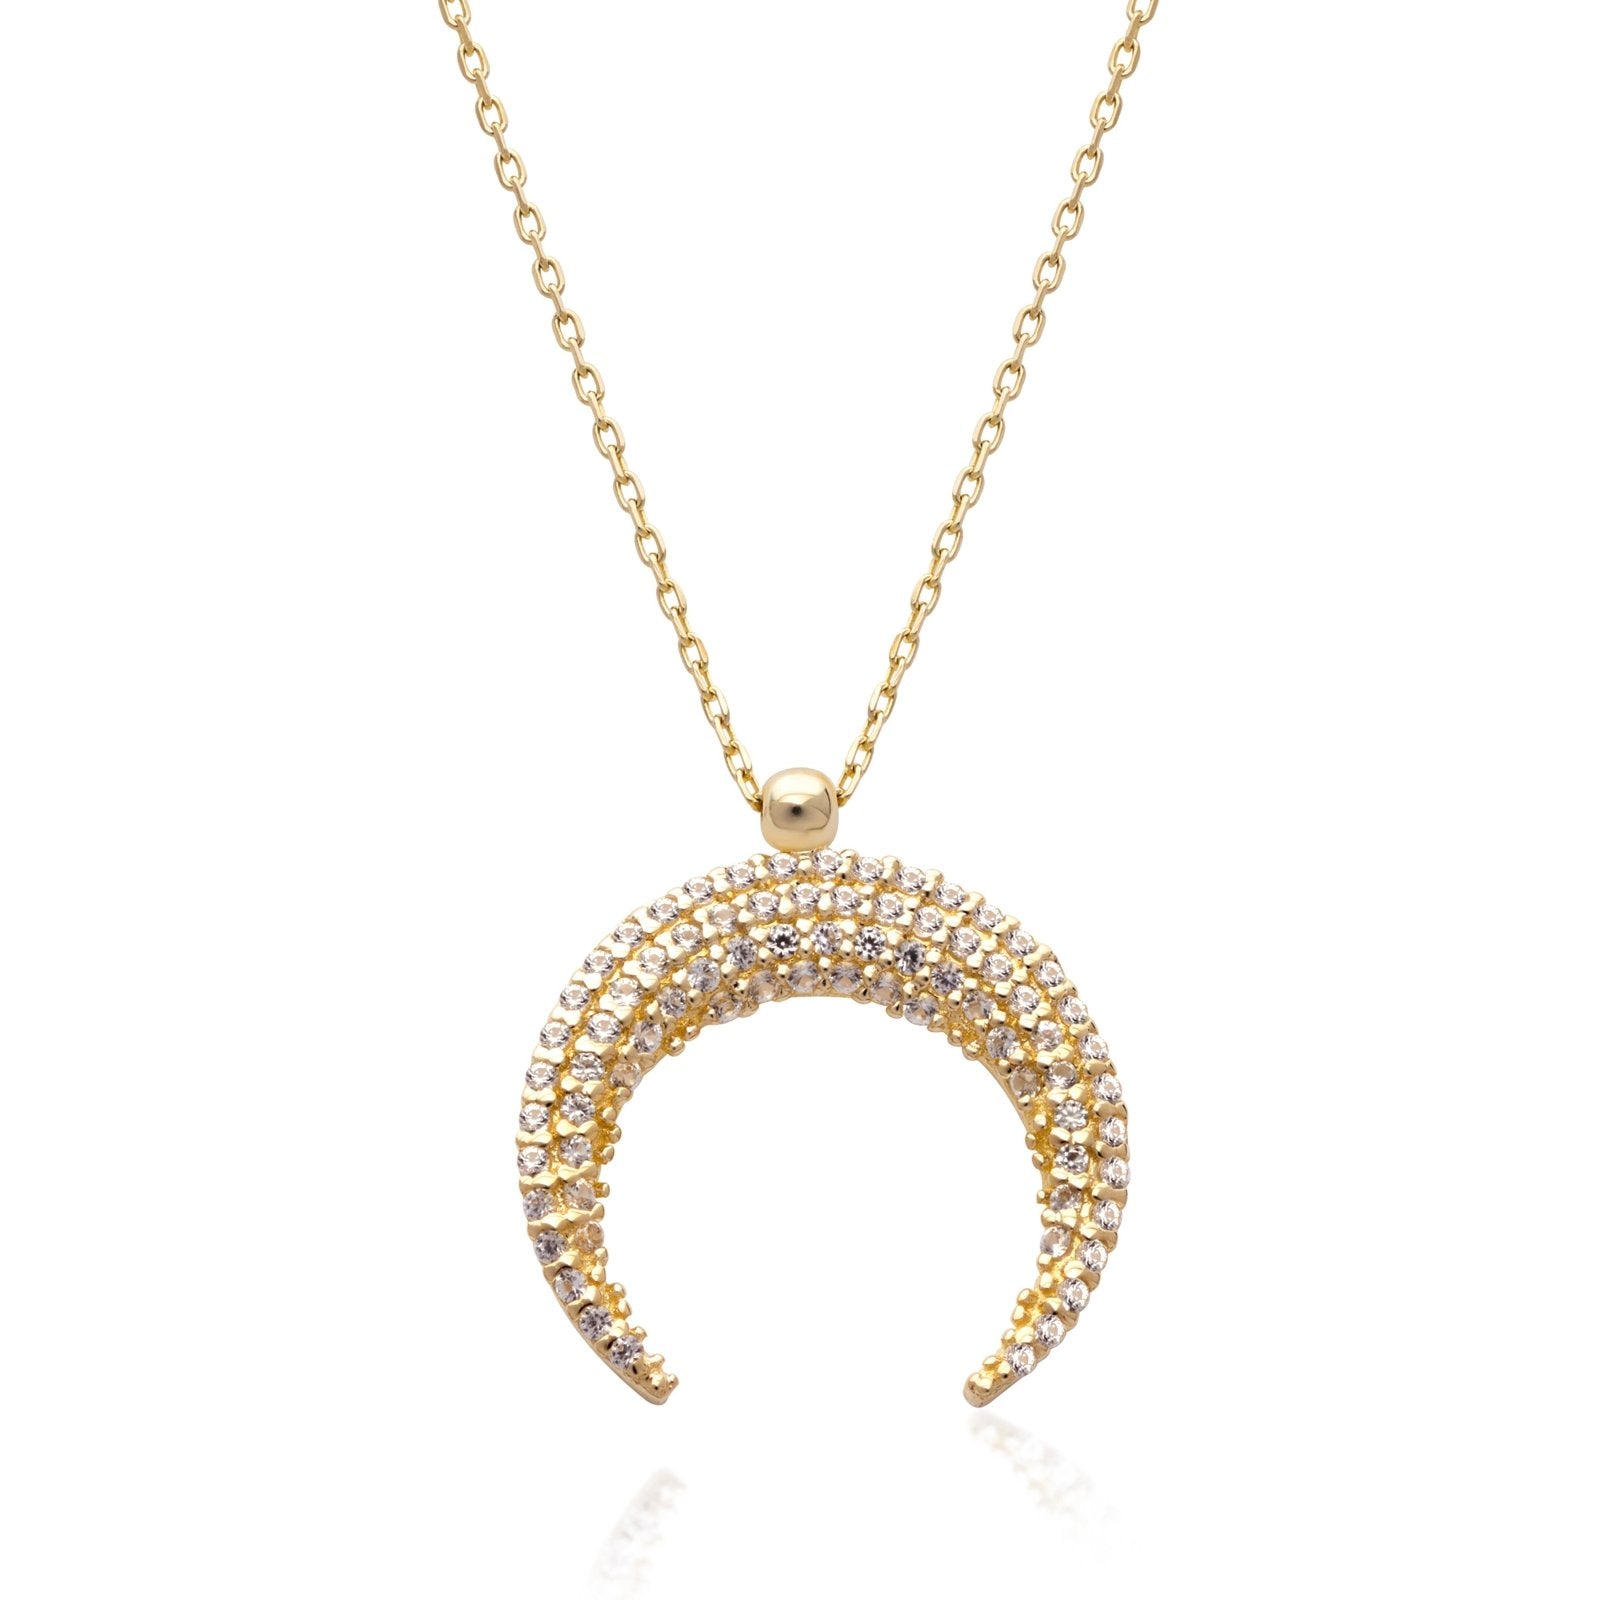 Sapphire Pave Crescent Moon Necklace Necklaces Estella Collection #product_description# 14k Birthstone Gemstone #tag4# #tag5# #tag6# #tag7# #tag8# #tag9# #tag10#